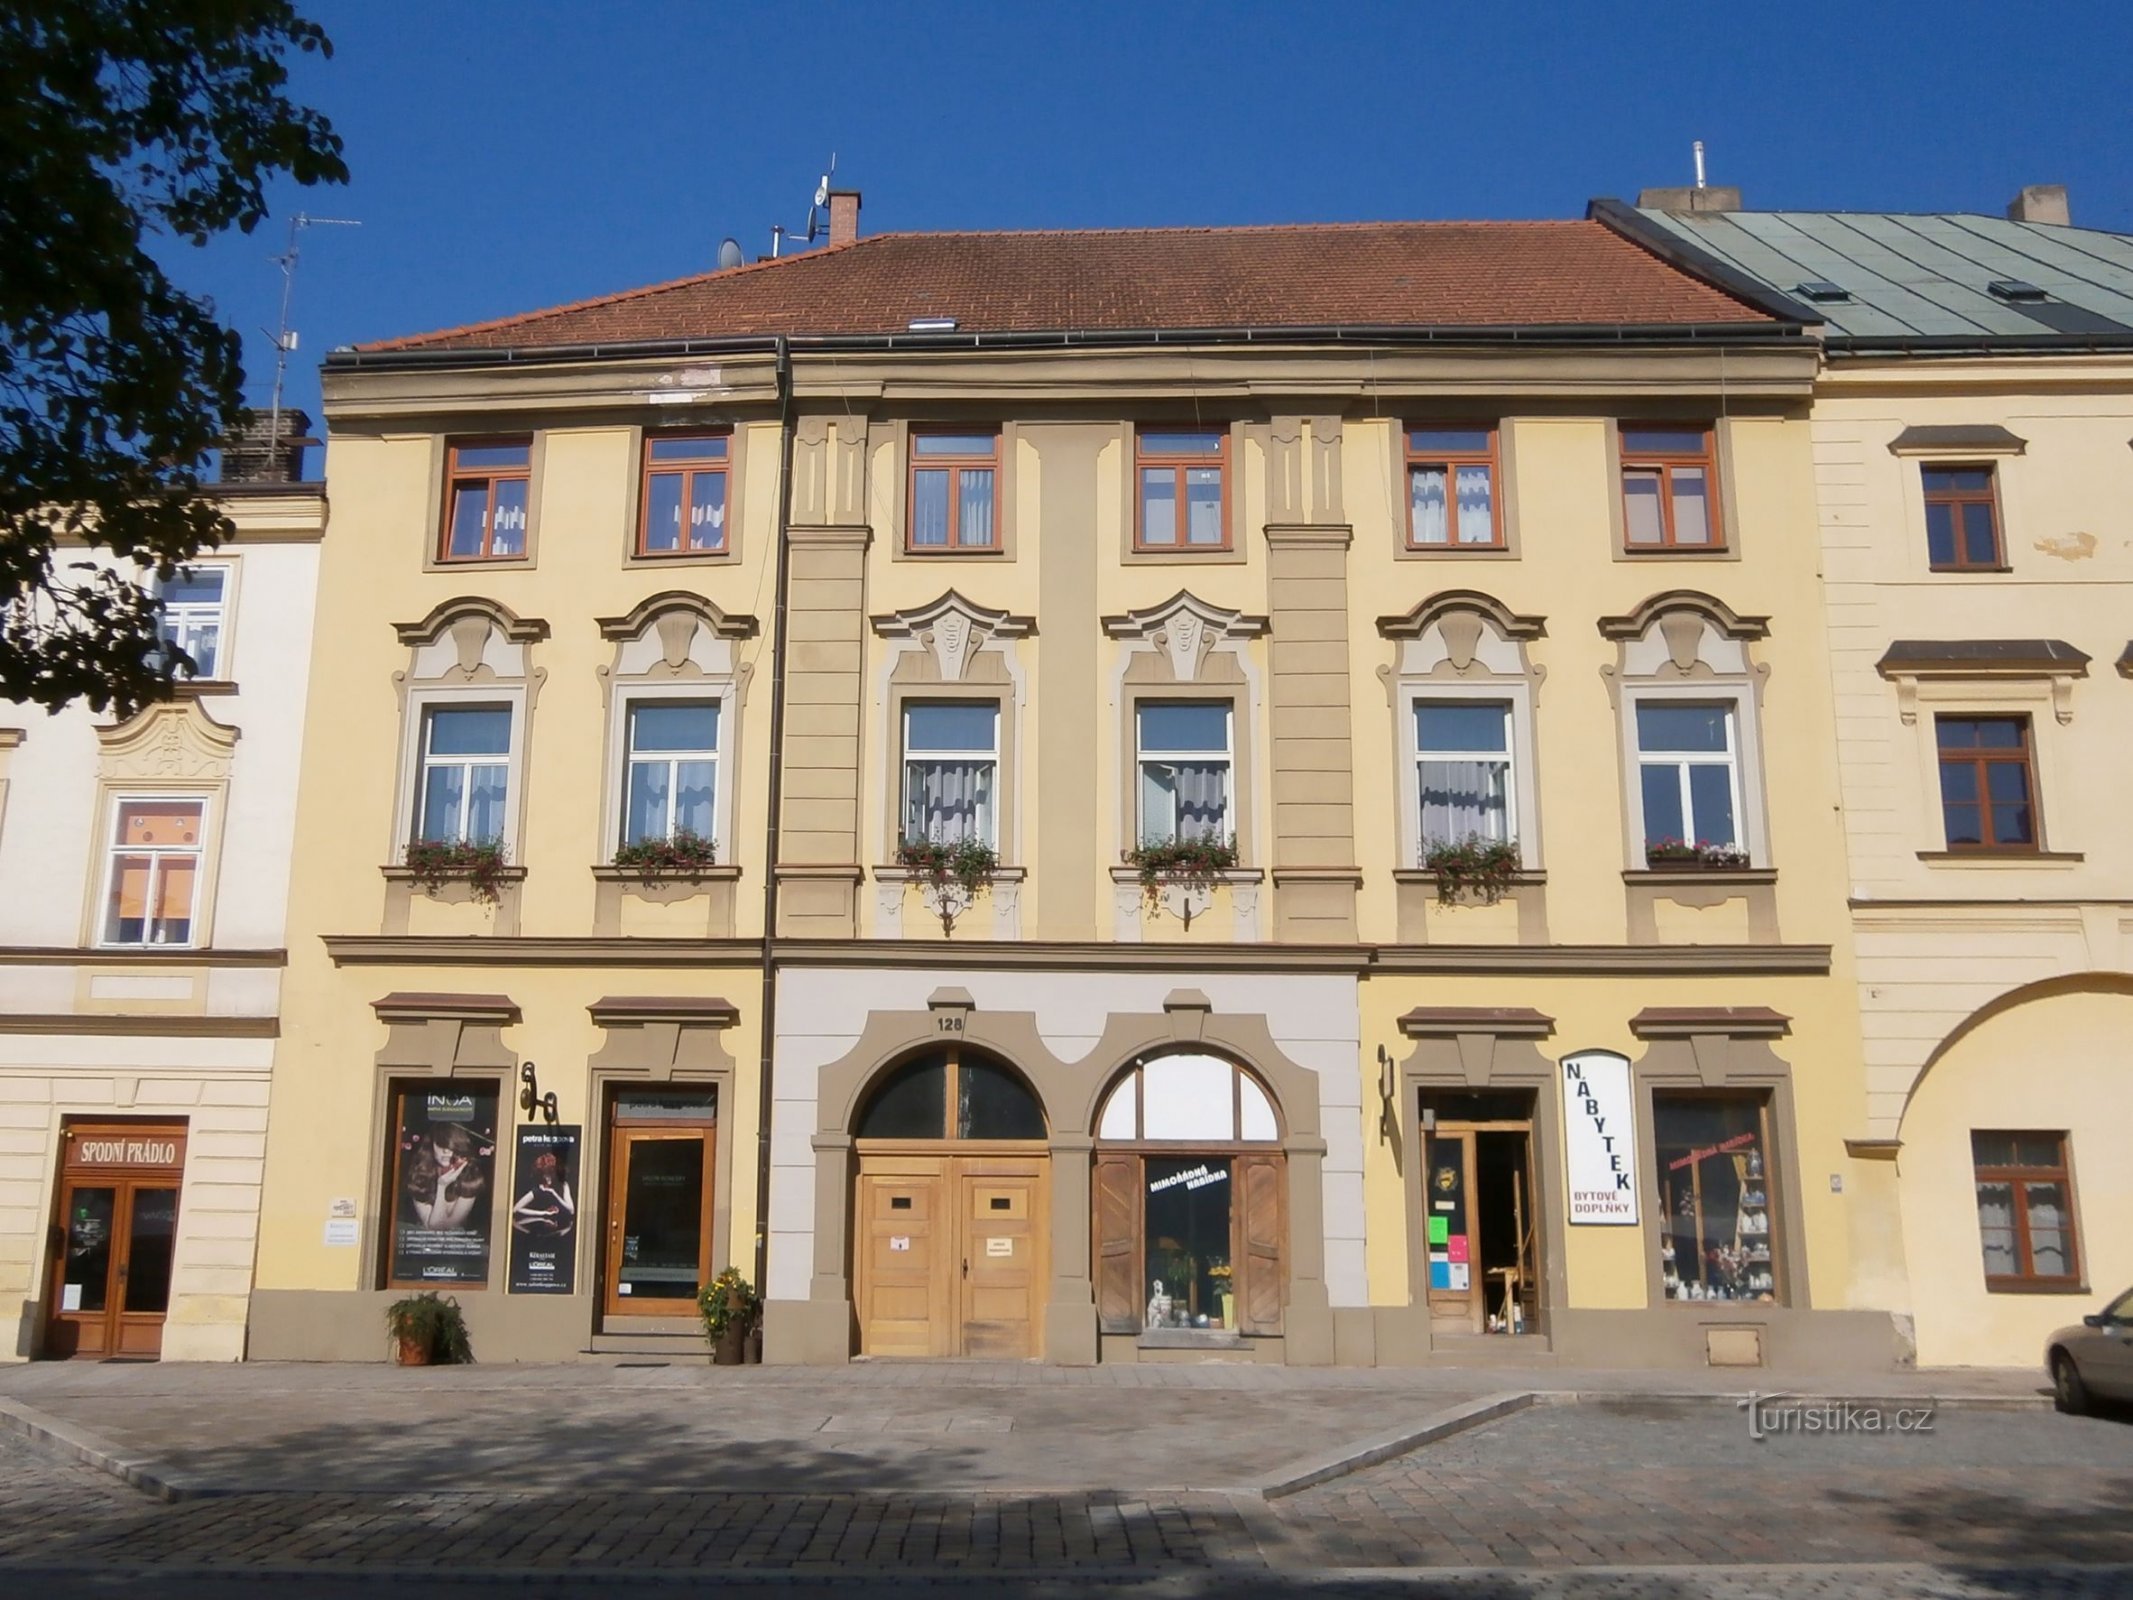 Malé náměstí nr. 128 (Hradec Králové, 9.7.2013 april XNUMX)